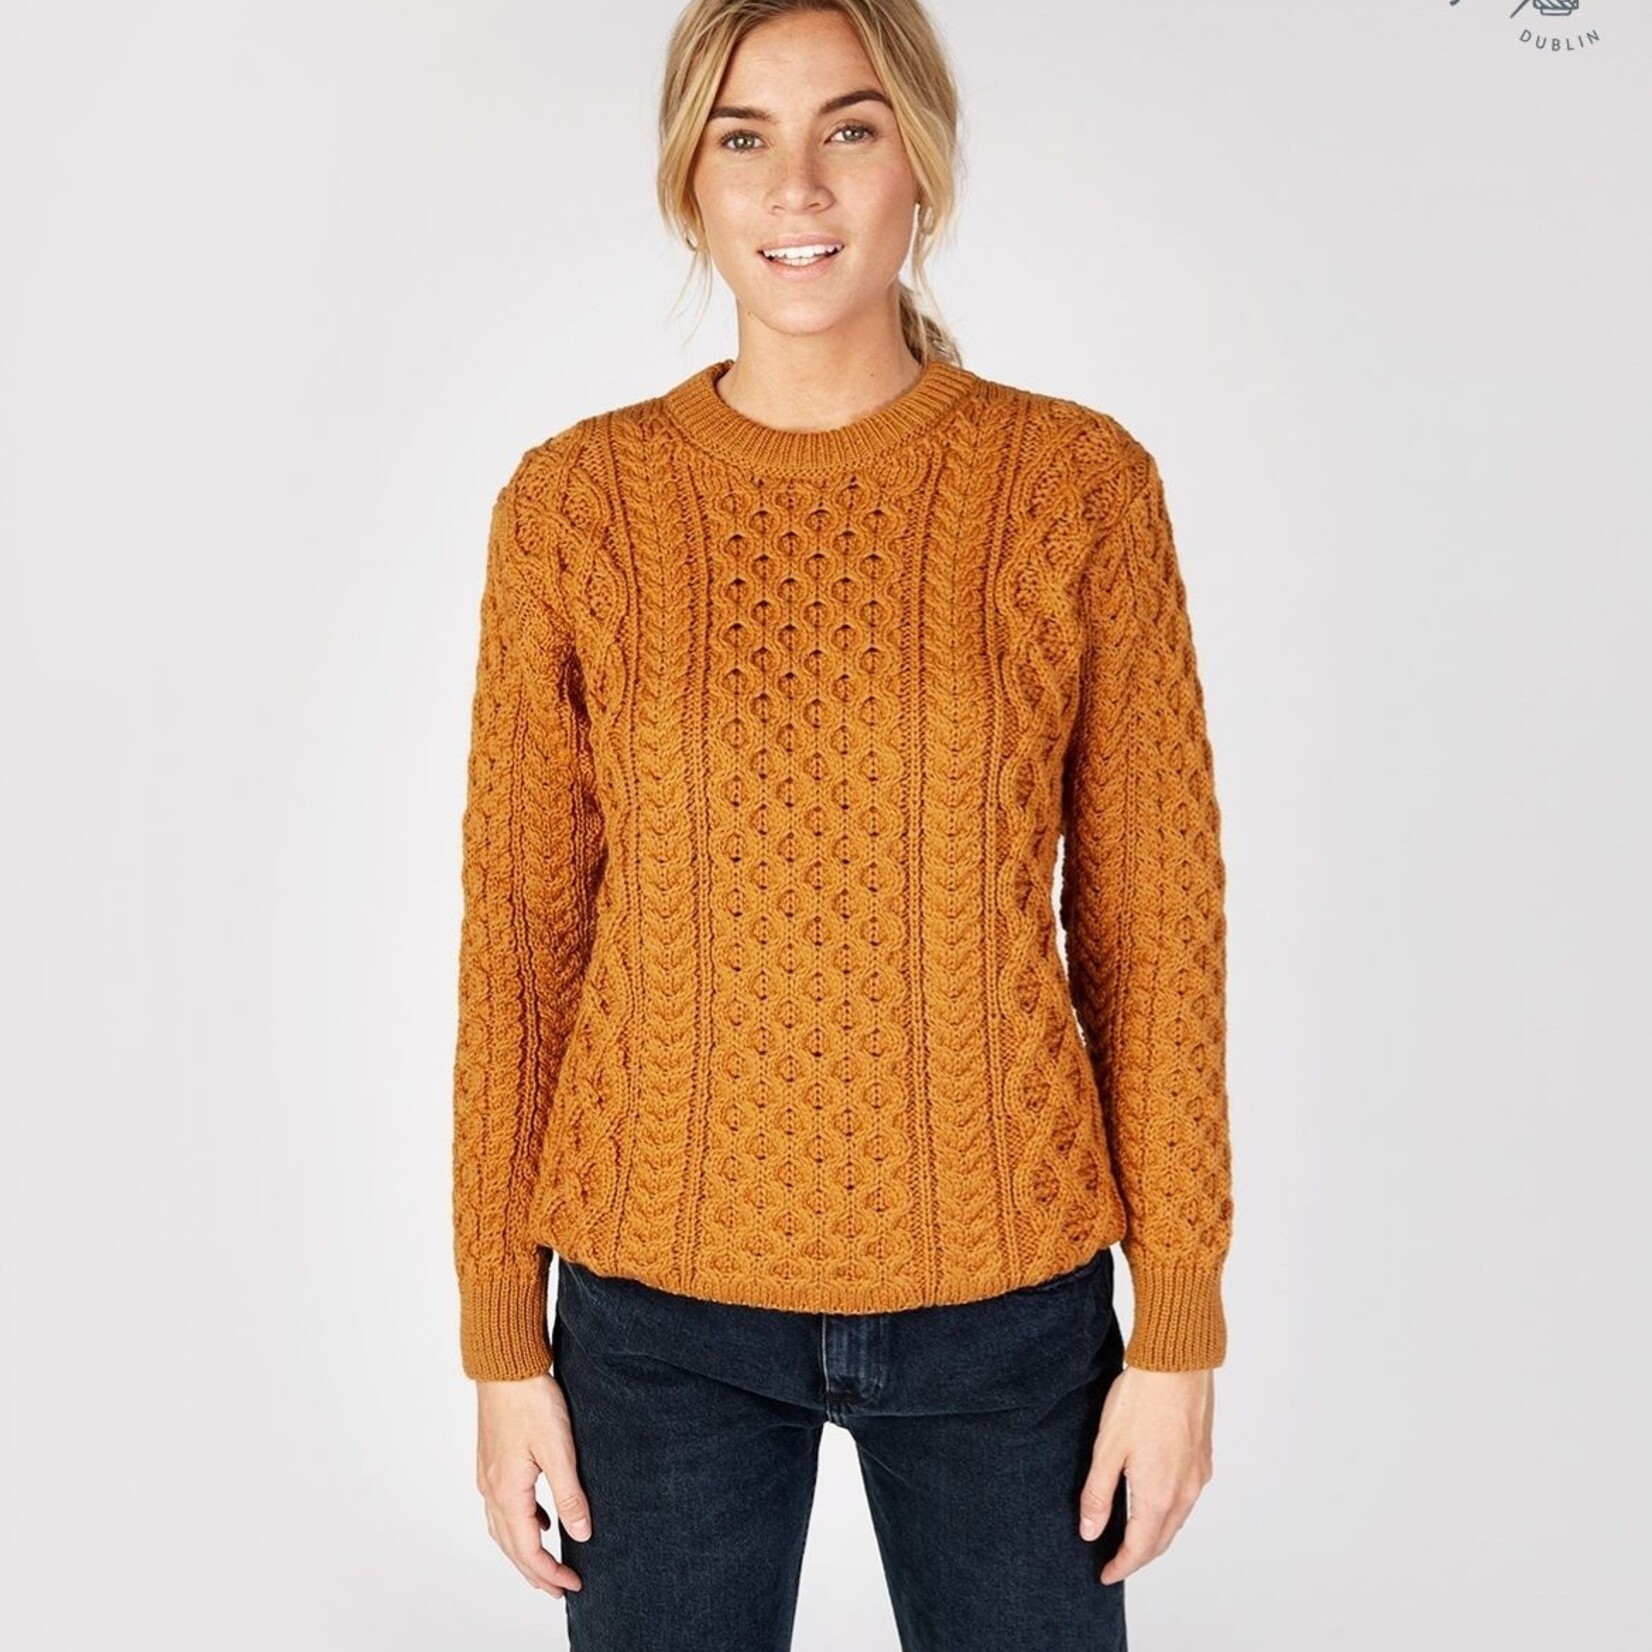 IrelandsEye Knitwear Golden Ochre Wool Sweater w/ Honeycomb Stitch :